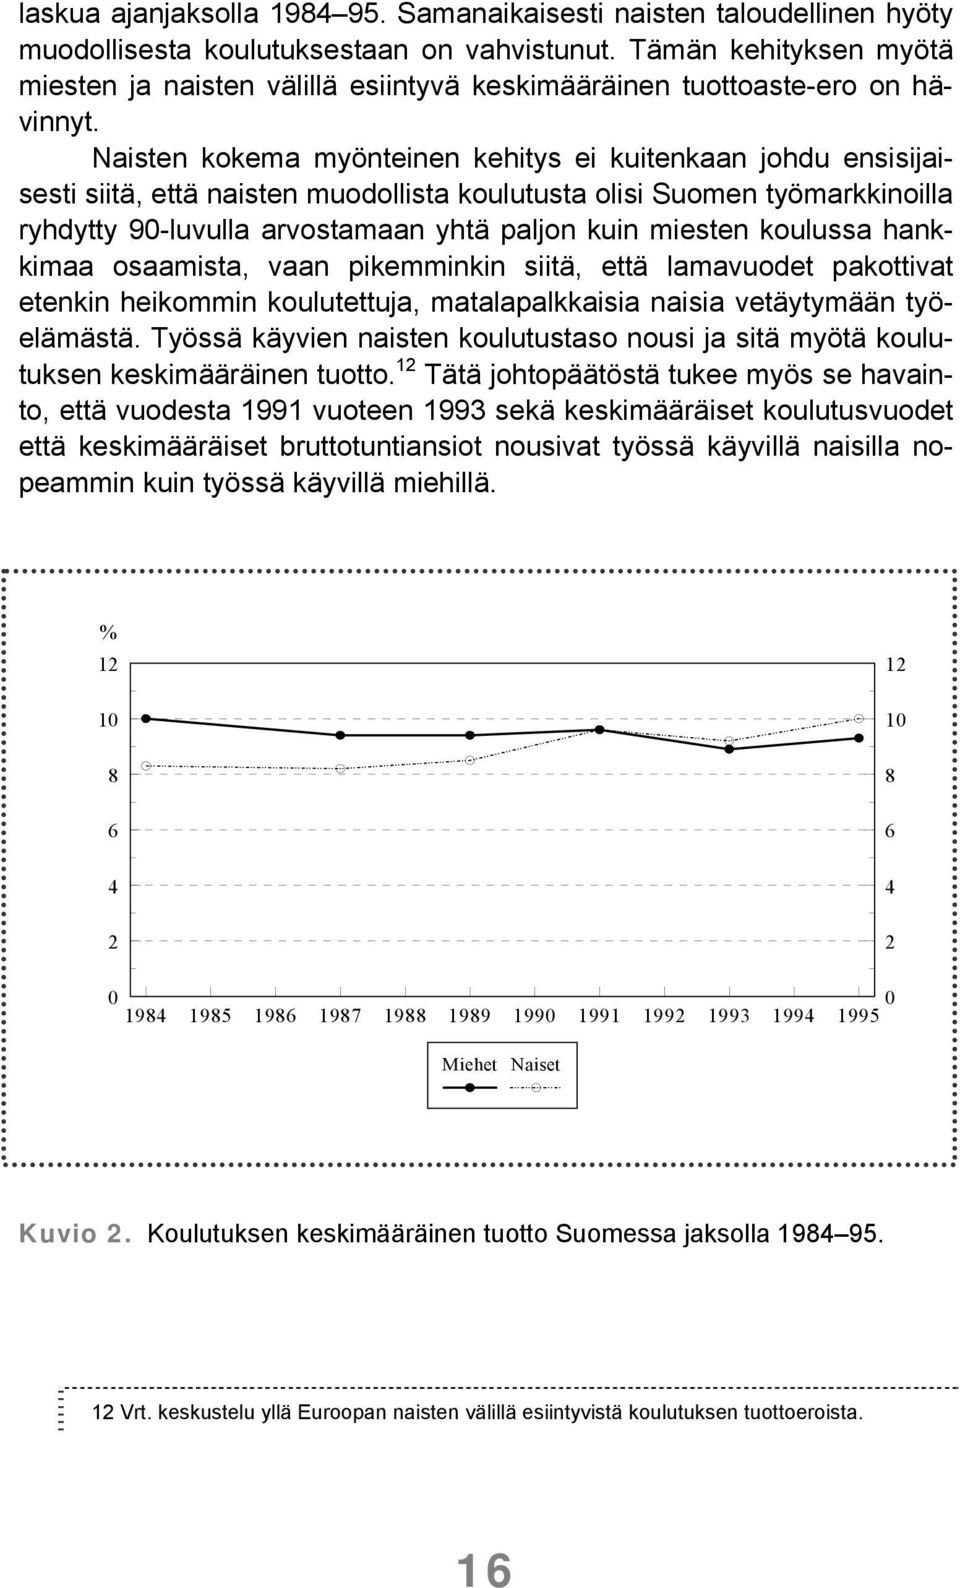 Naisten kokema myönteinen kehitys ei kuitenkaan johdu ensisijaisesti siitä, että naisten muodollista koulutusta olisi Suomen työmarkkinoilla ryhdytty 90-luvulla arvostamaan yhtä paljon kuin miesten